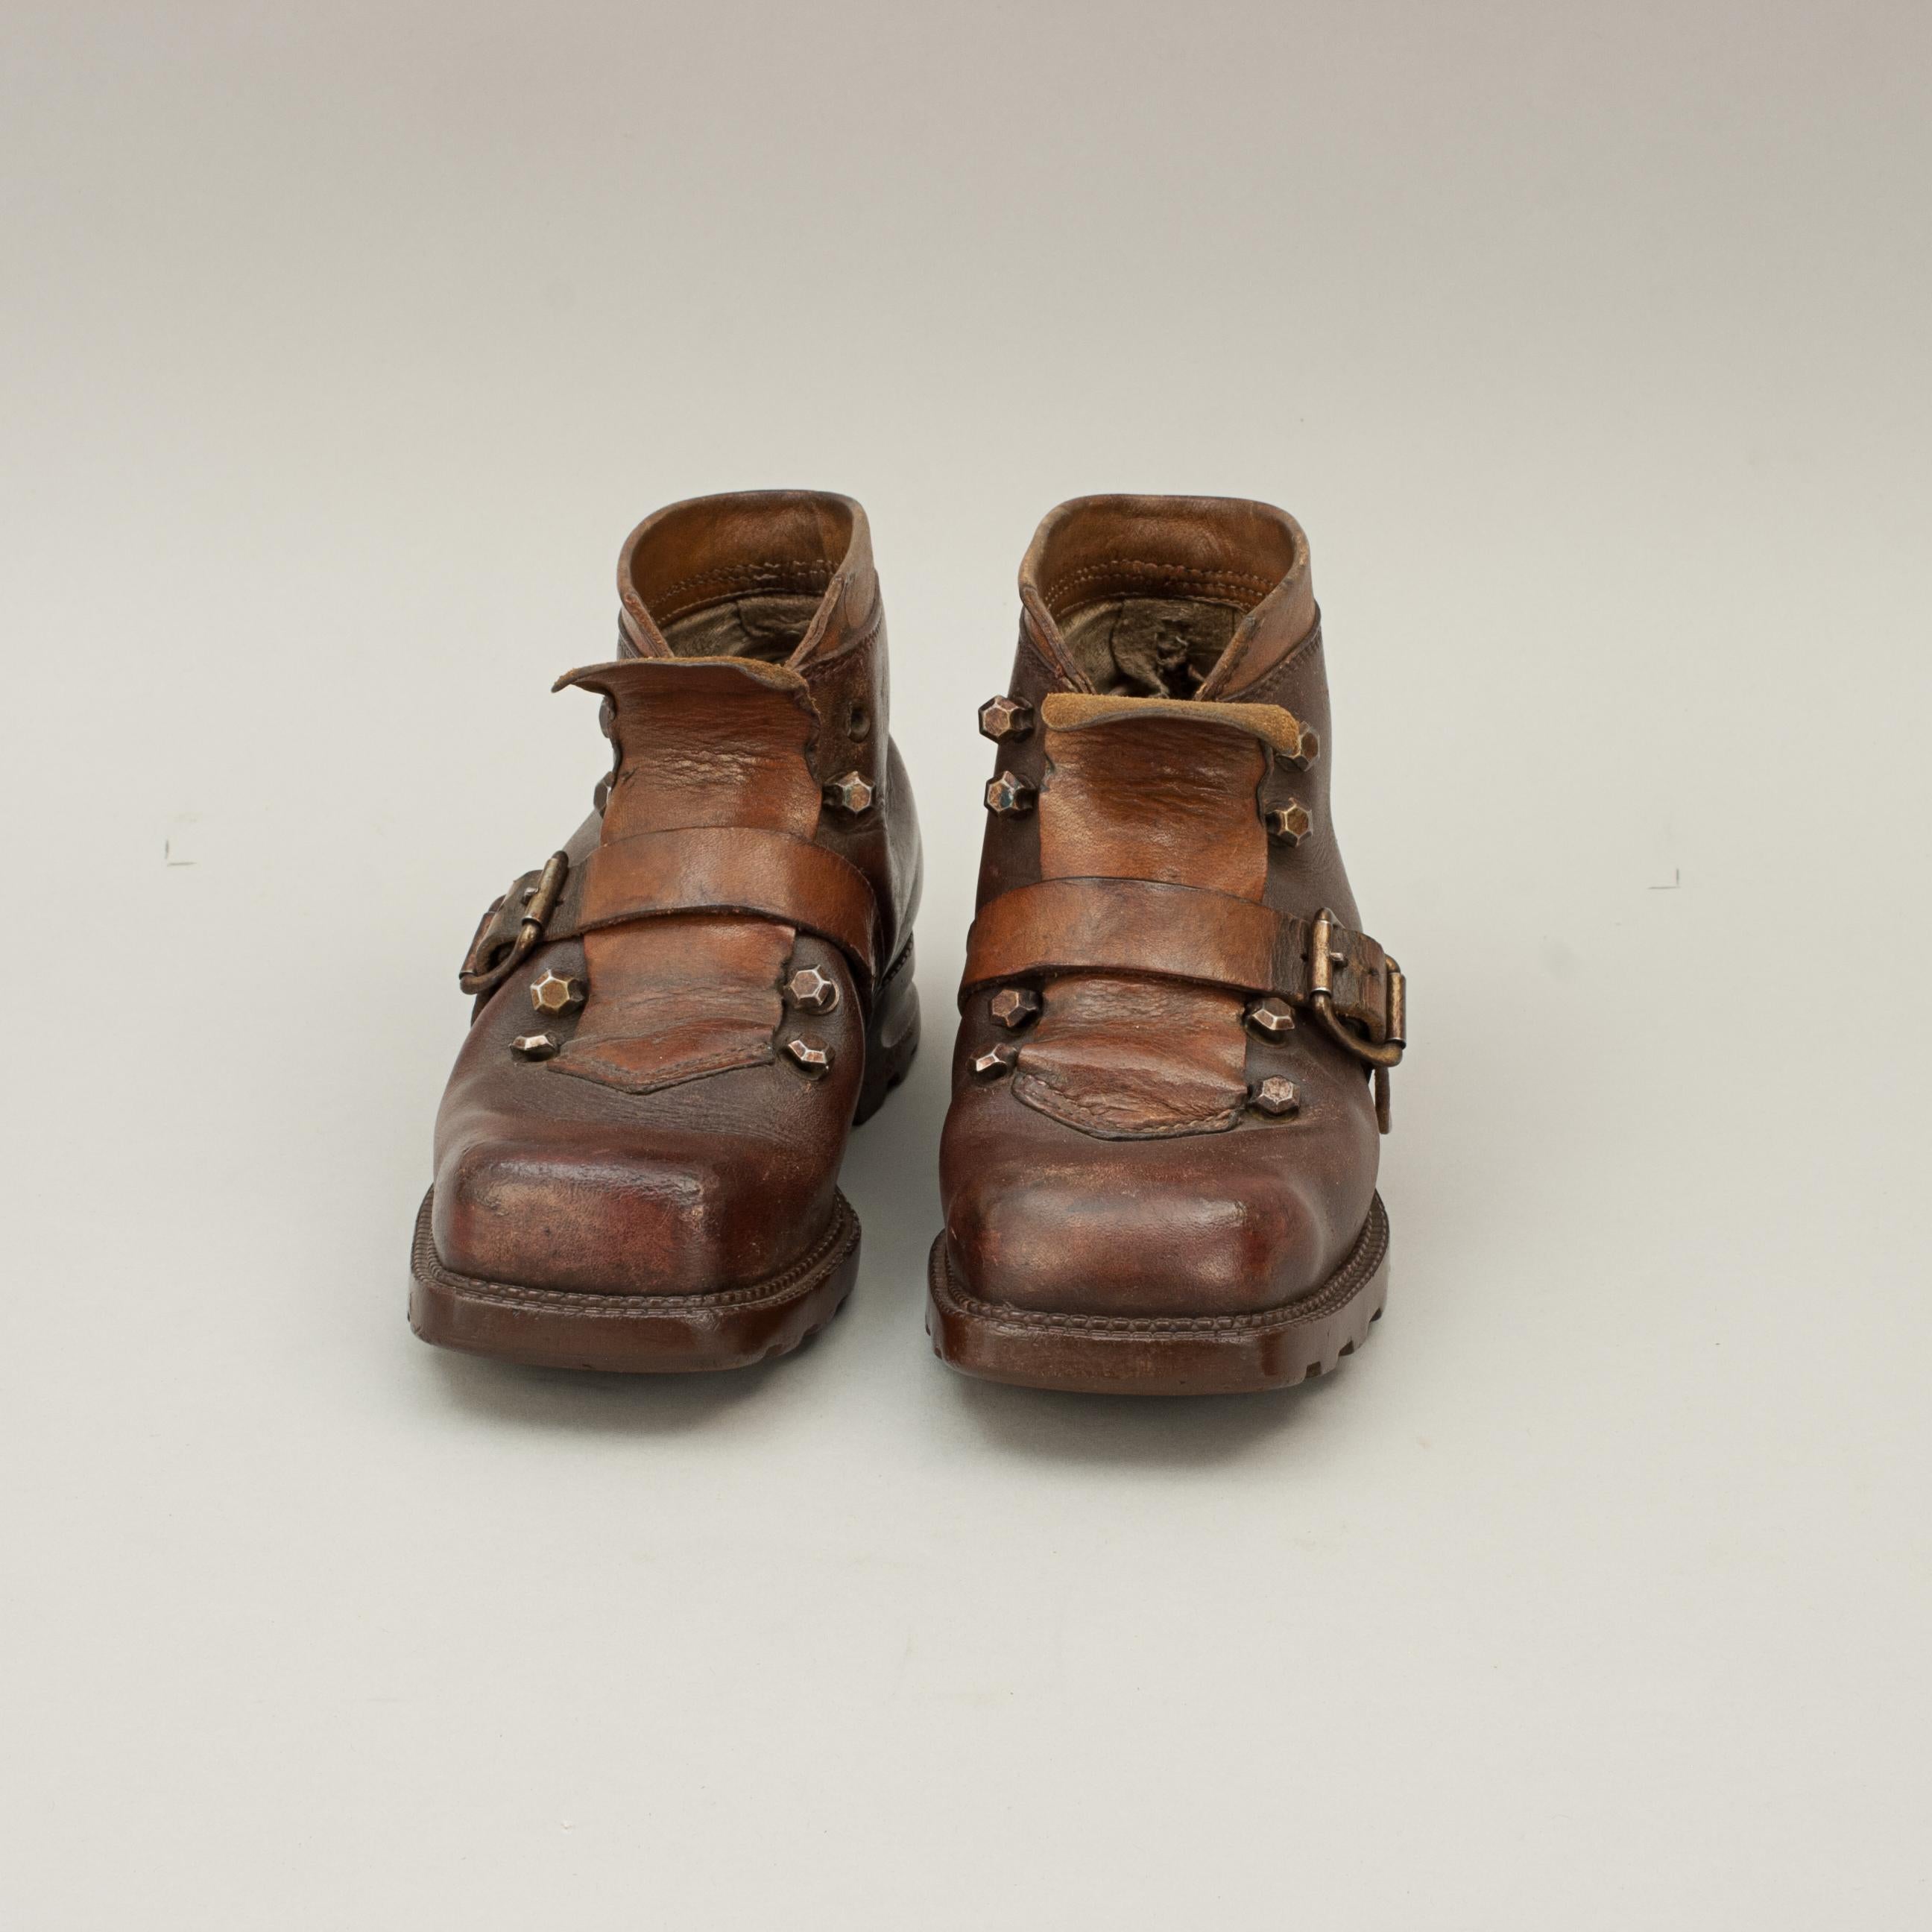 German Pair of Vintage Children's Ski Boots in Leather, Wasserdicht For Sale